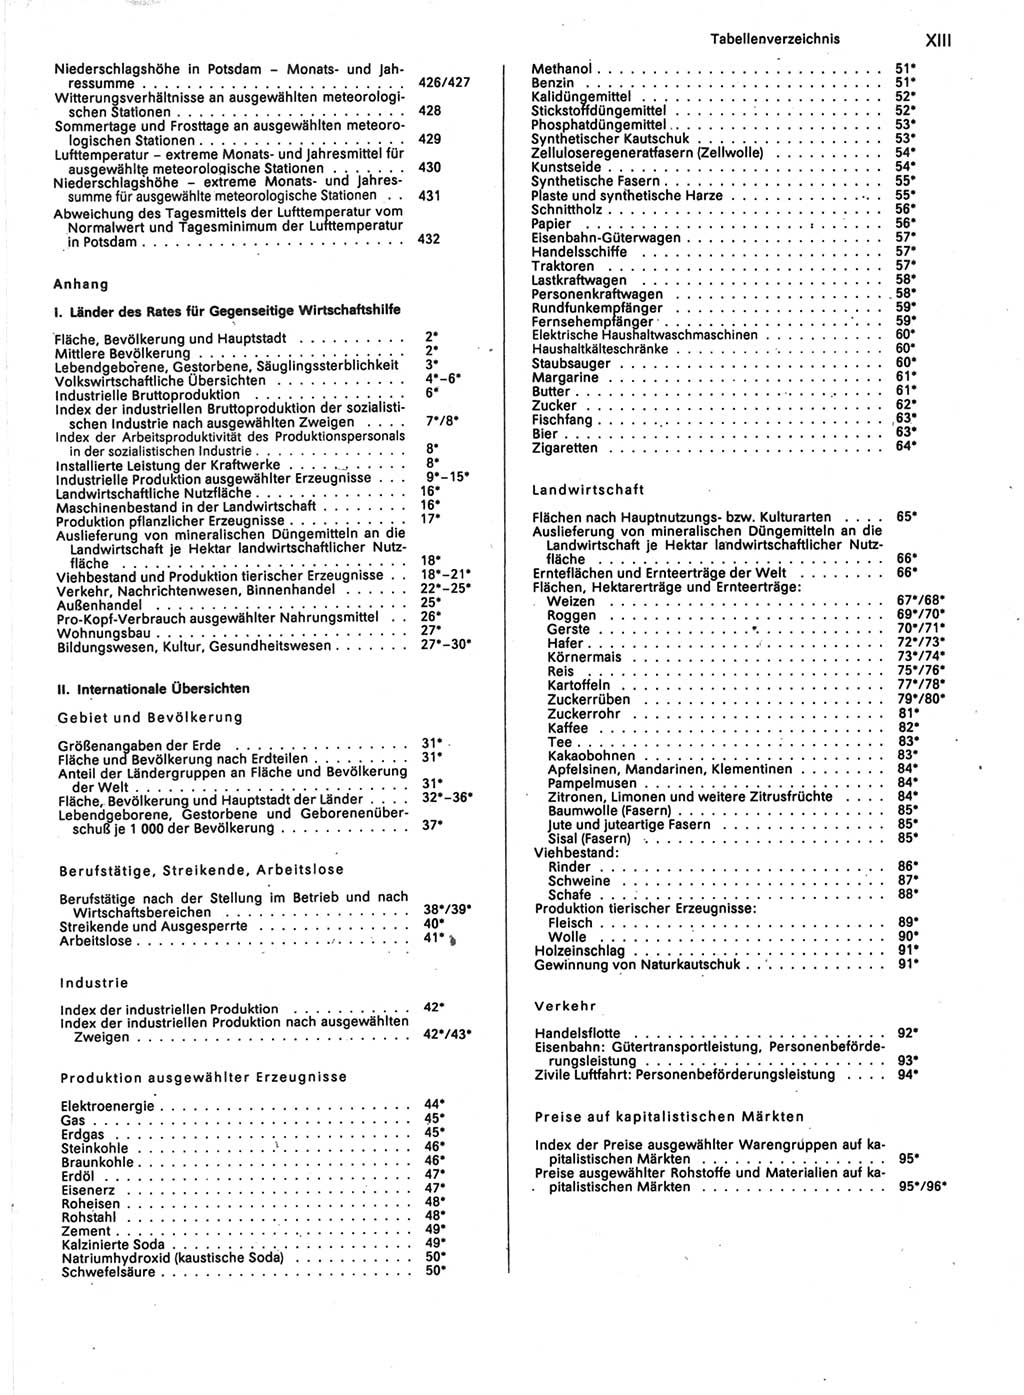 Statistisches Jahrbuch der Deutschen Demokratischen Republik (DDR) 1989, Seite 13 (Stat. Jb. DDR 1989, S. 13)